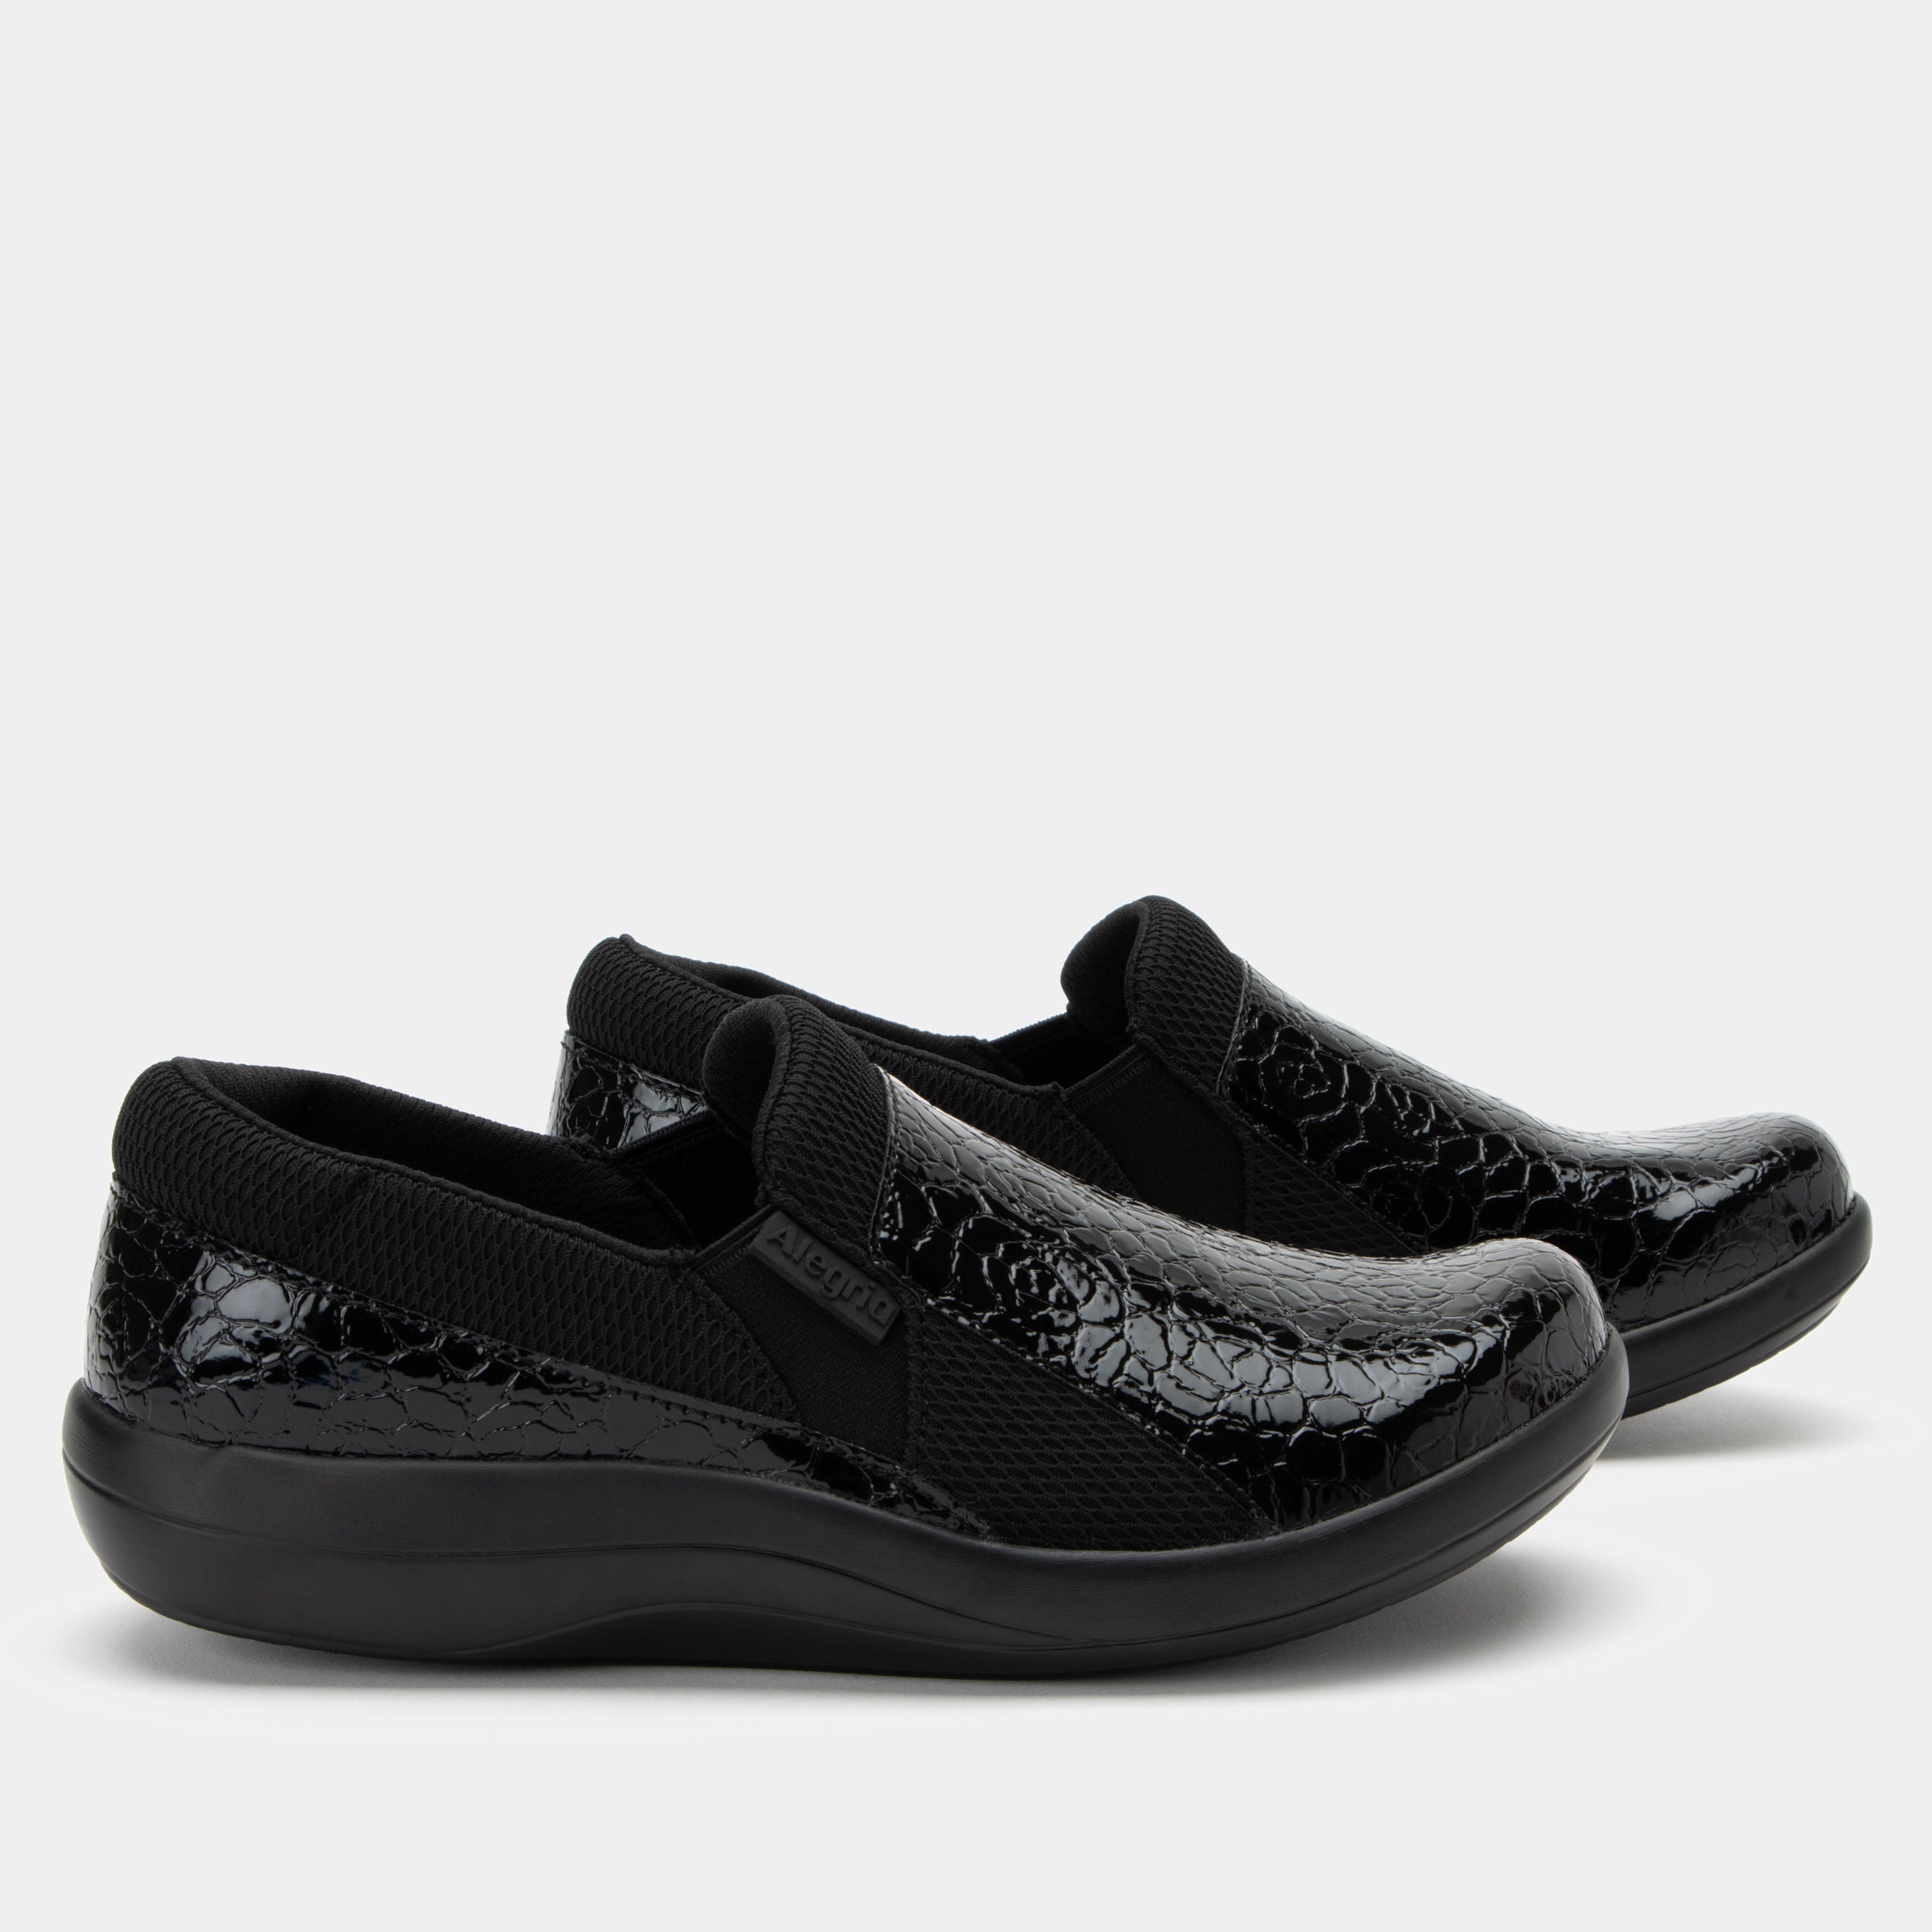 Duette Flourish Black Shoe - Alegria Shoes